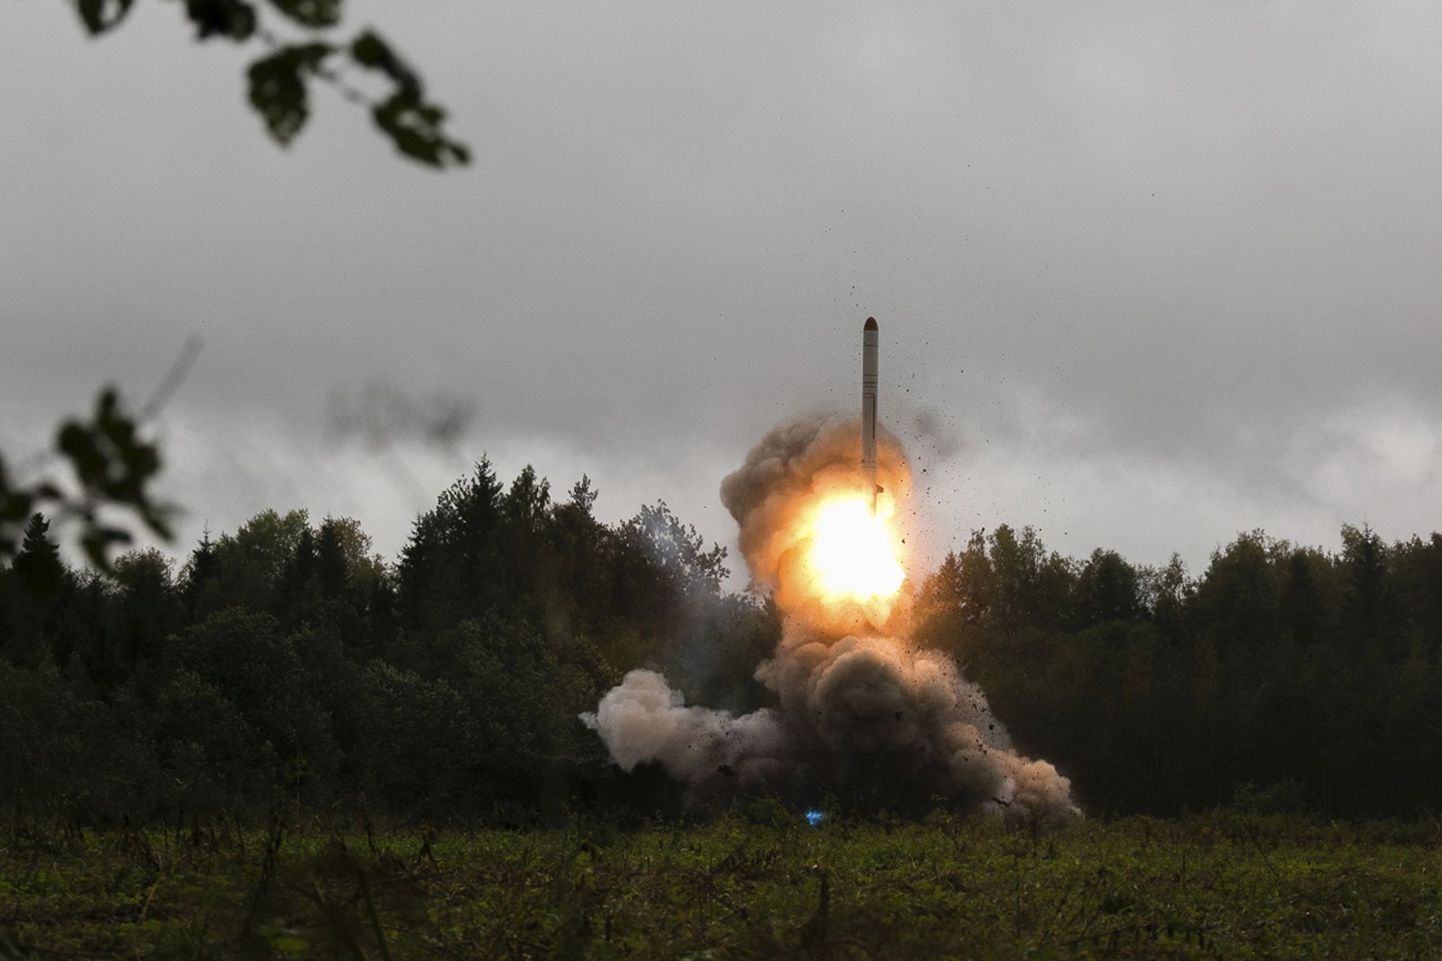 Sellel Venemaa kaitseministeeriumi 19. septembril 2017 avaldatud fotol on näha Venemaa taktikalist raketti Iskander-M päev varem, 18. septembril 2017 Peterburi lähedal Luga polügoonil toimunud sõjalise õppuse Zapad 2017 ajal.